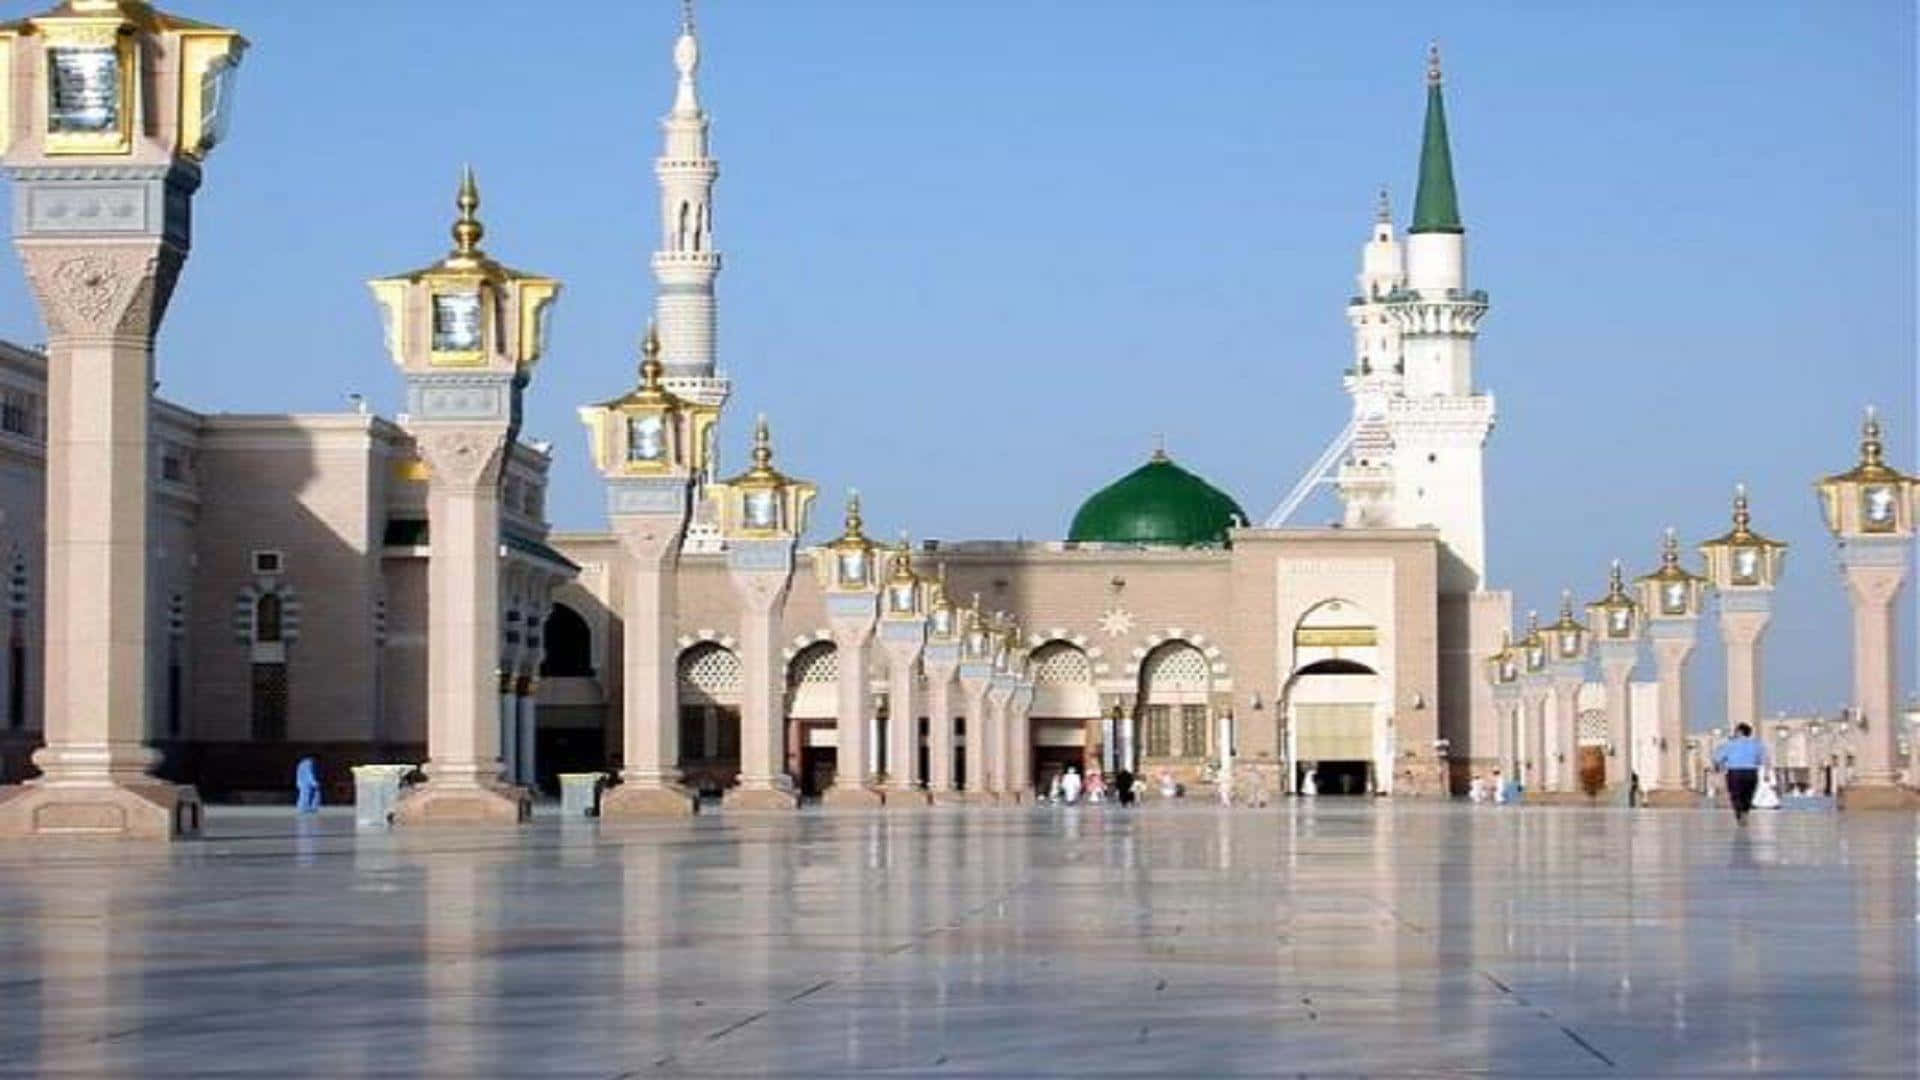 Fridfullnatt I Den Heliga Staden Medina